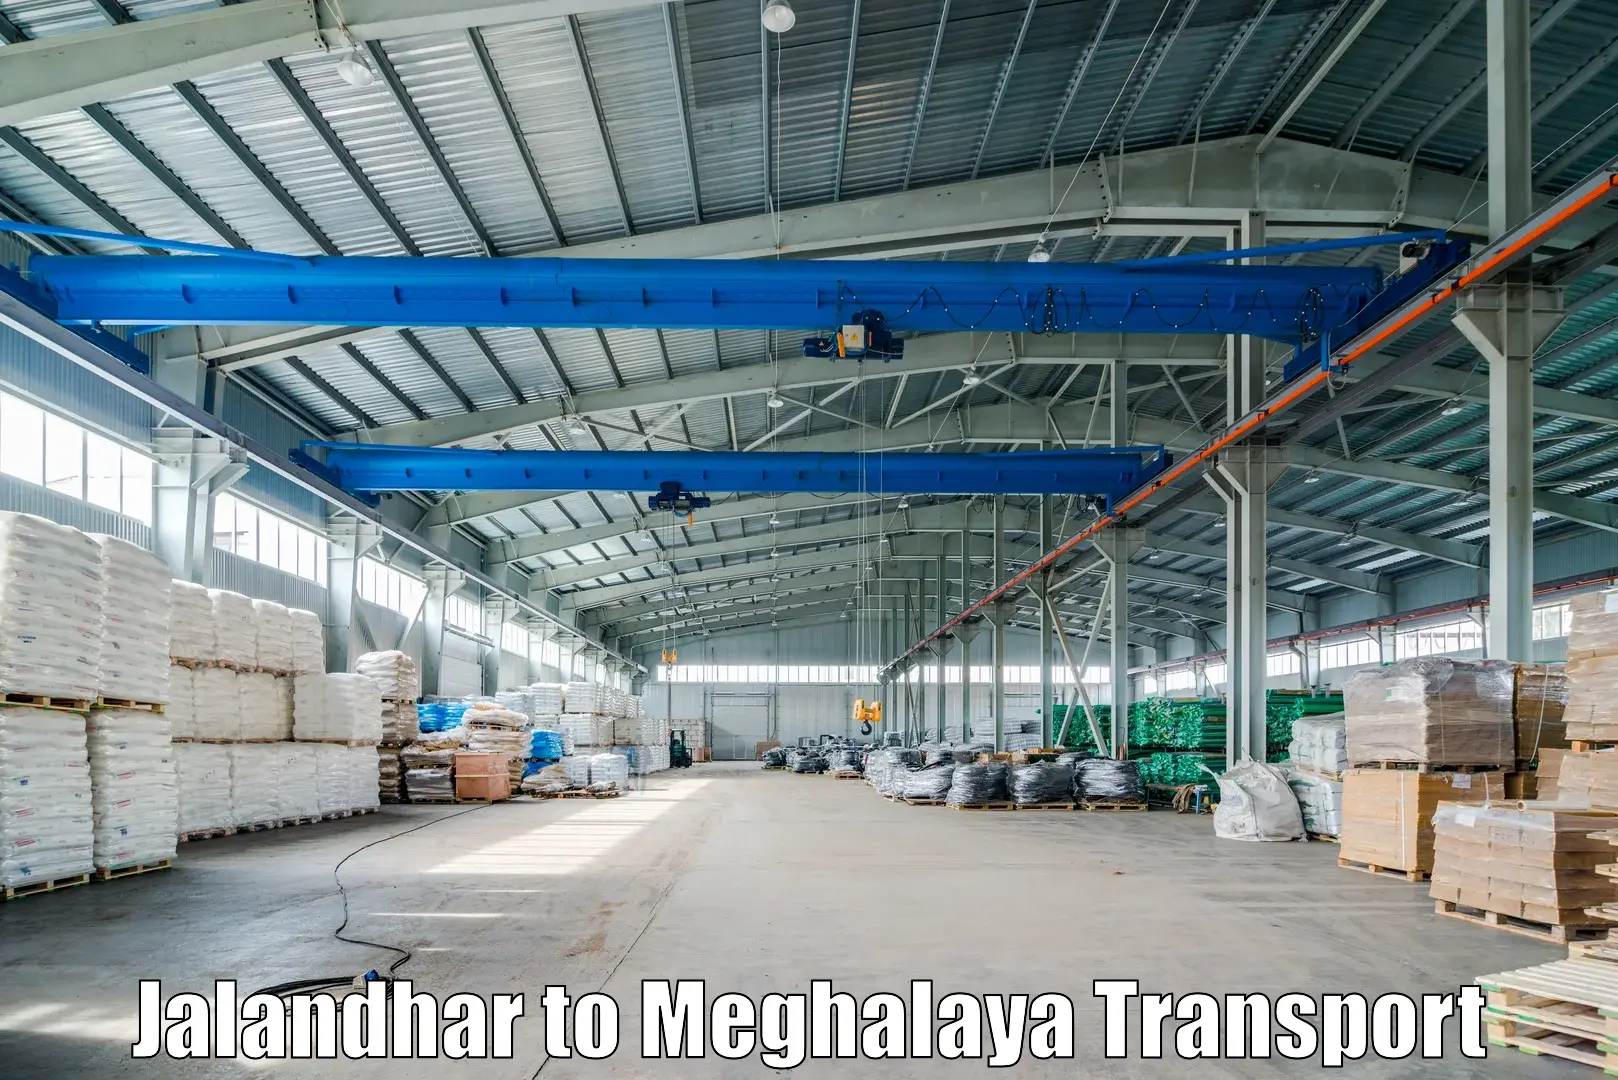 Commercial transport service Jalandhar to Meghalaya